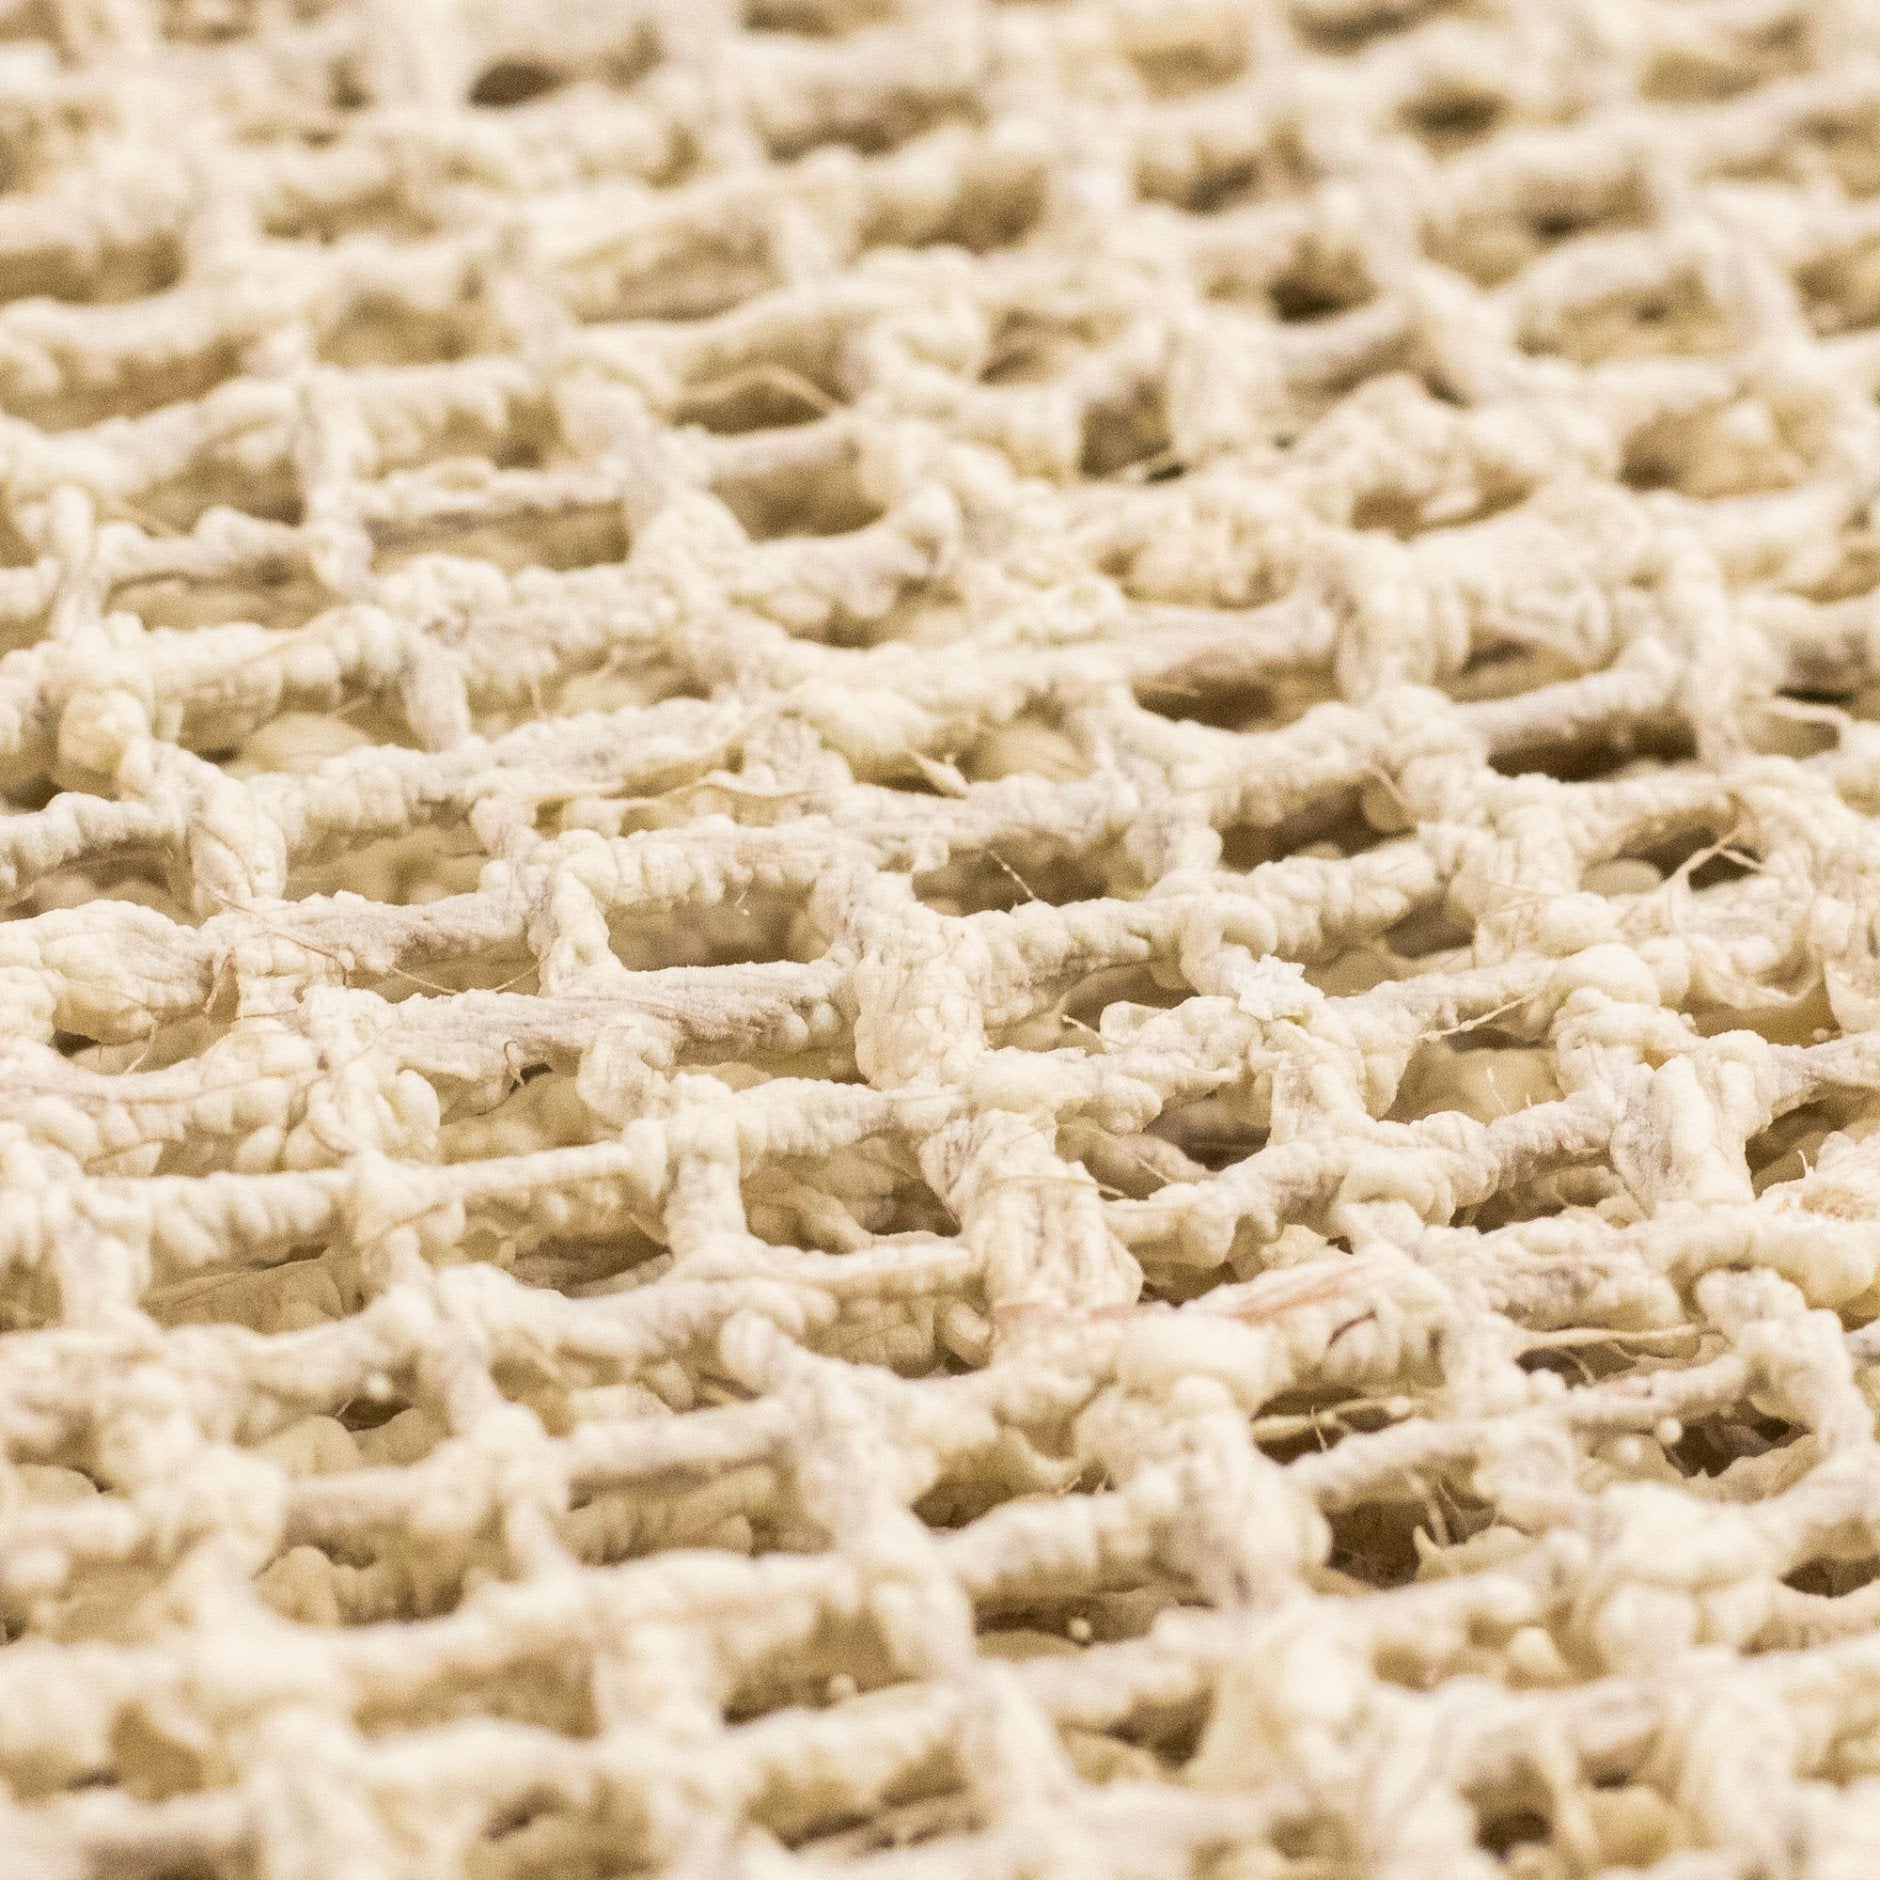 Tappeto solido tappetino anti -slip lattice organico e iuta, 130 x 190 cm